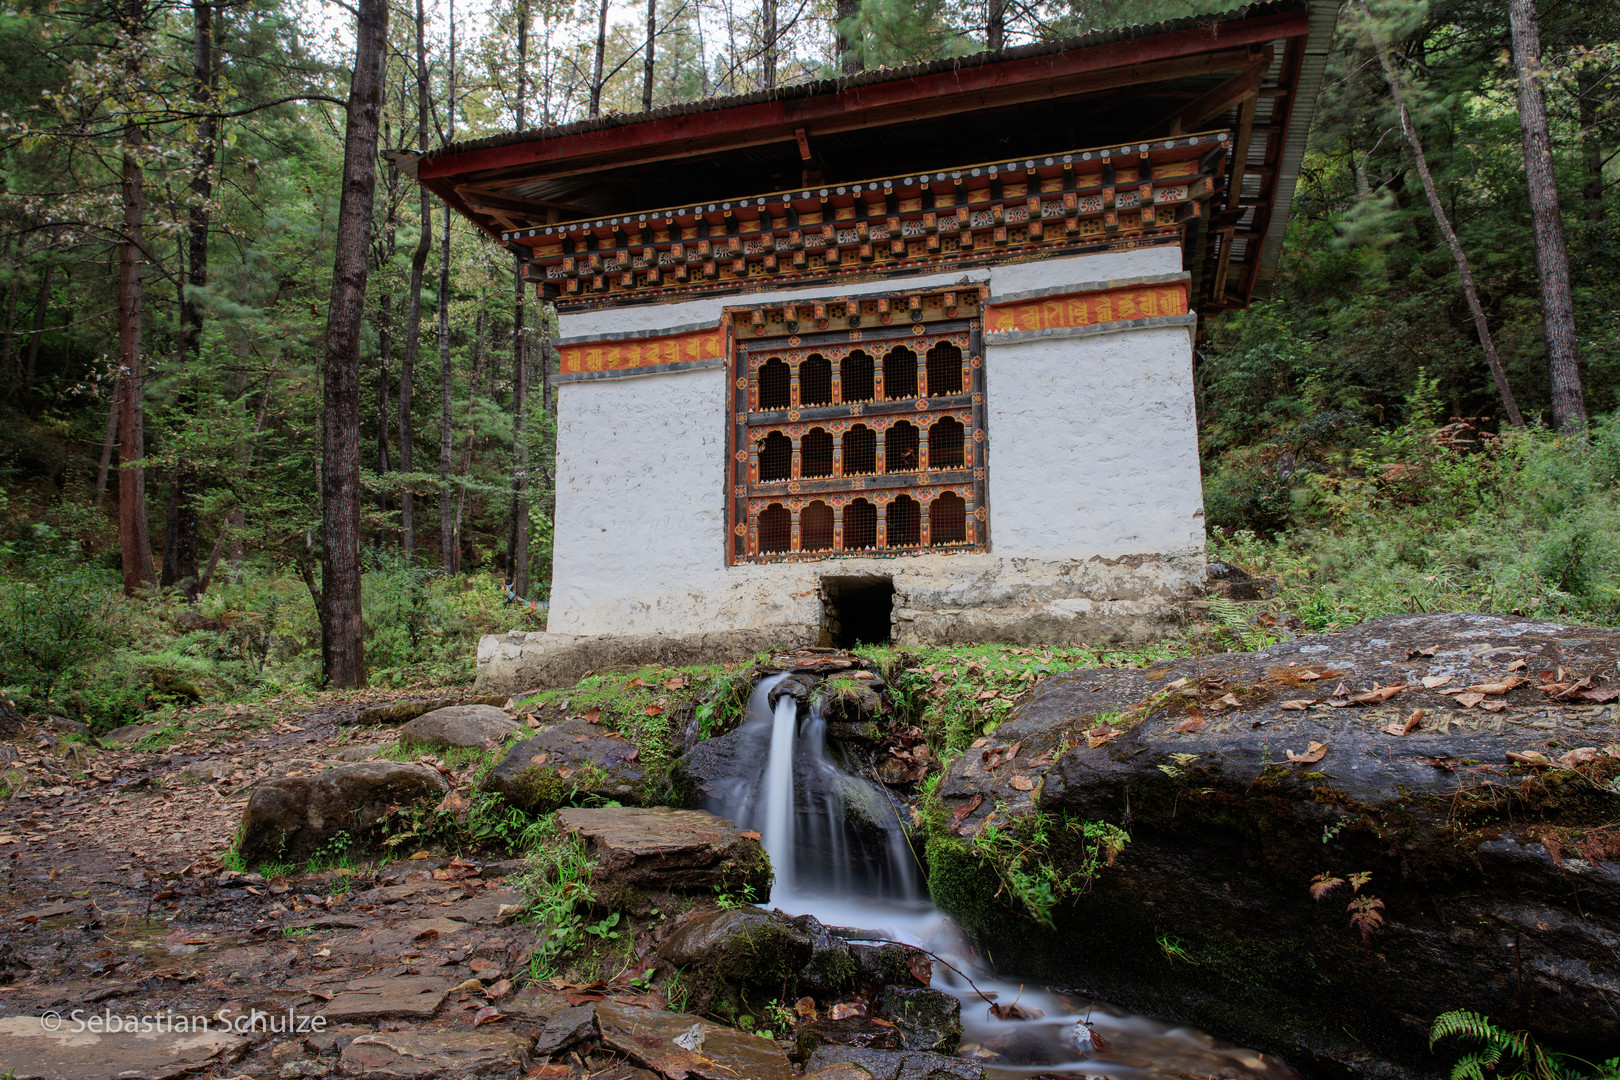 auf dem Weg zum Tigernestkloster - Bhutan 2015